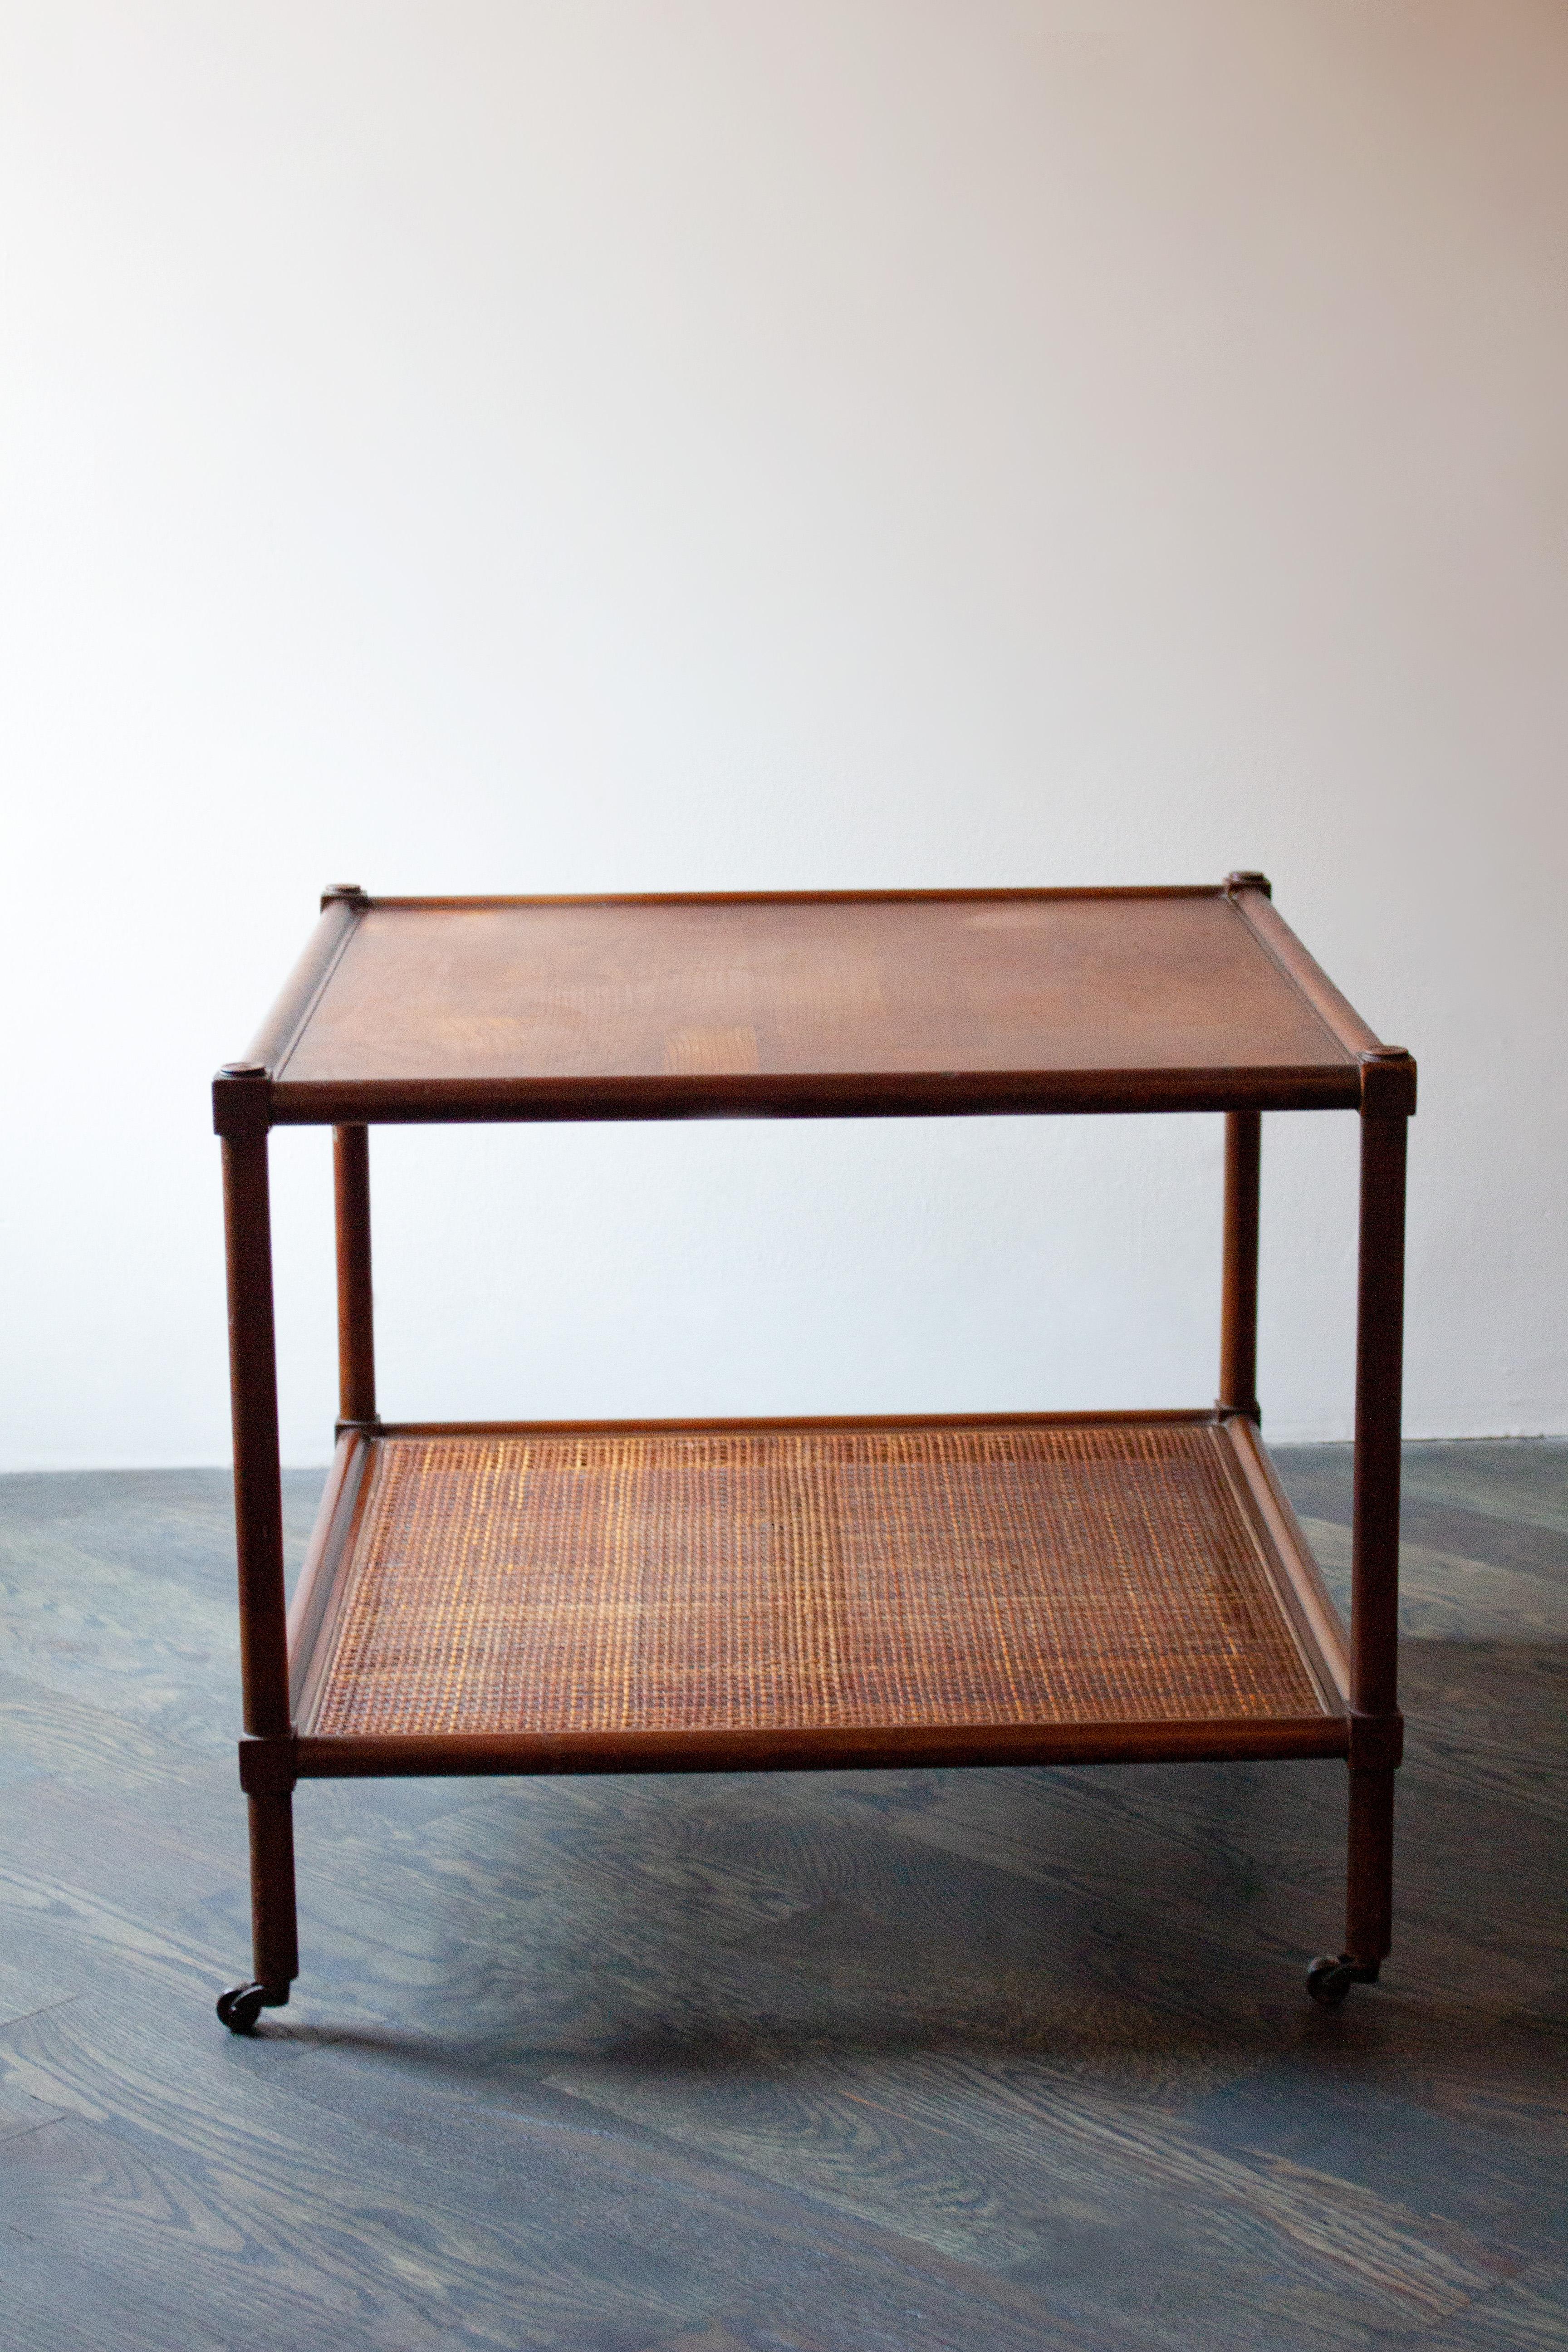 Magnifique et simpliste table roulante en rotin et bois. L'étagère inférieure permet un rangement supplémentaire et une grande polyvalence sur cette table légère et carrée. 

Veuillez noter qu'il y a un trou d'un demi-pouce dans le rotin sur